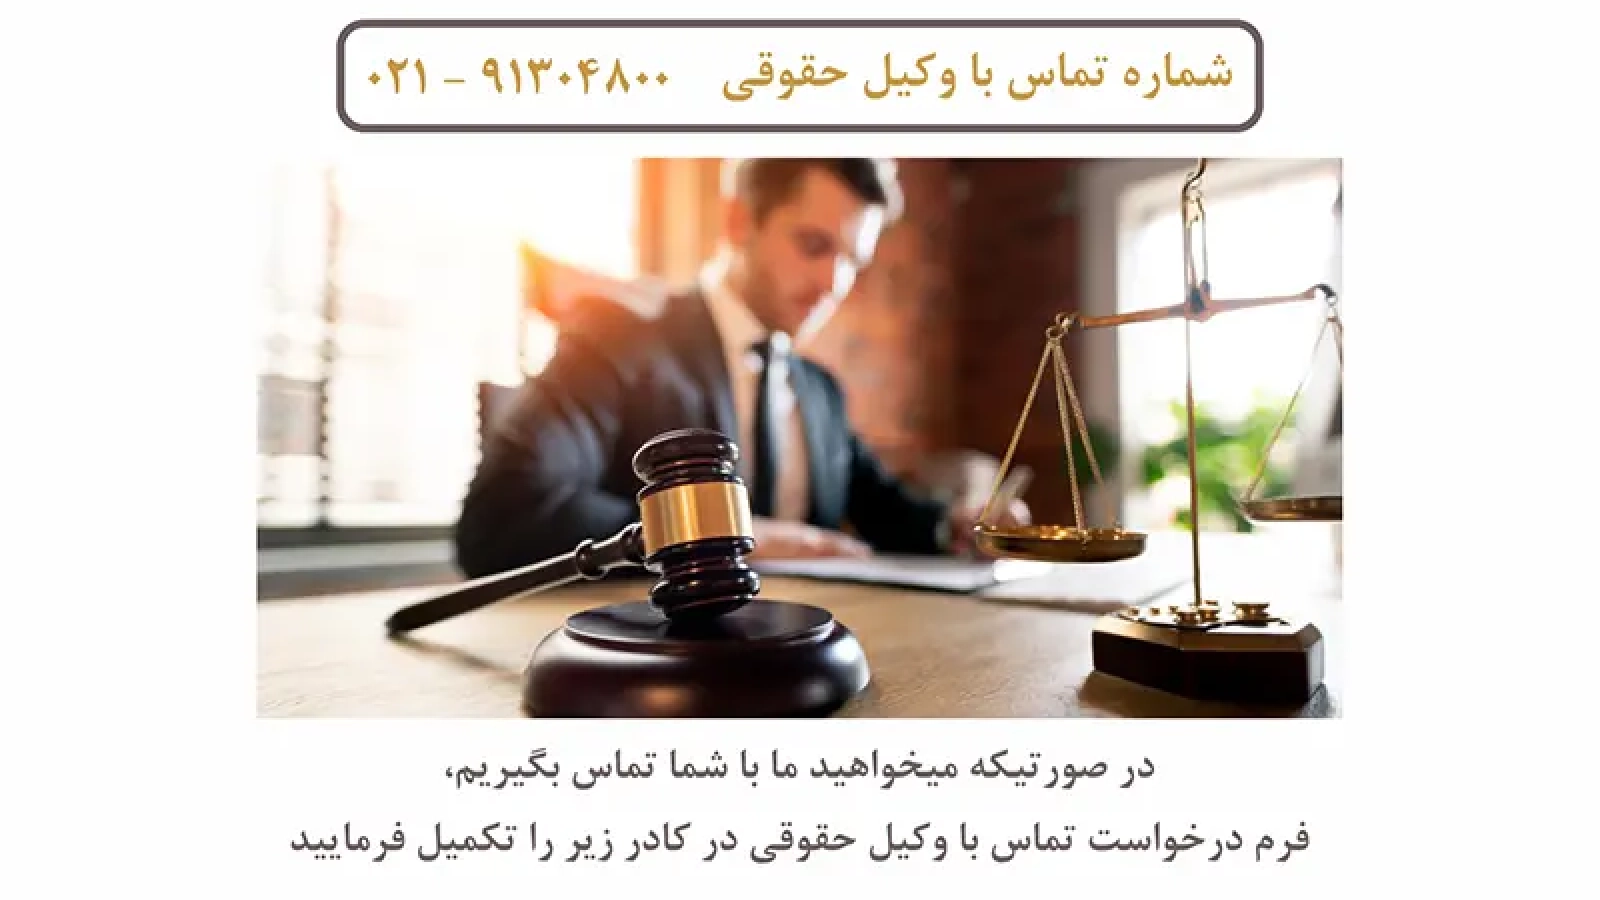 وکیل حقوقی مجرب در شهر تهران